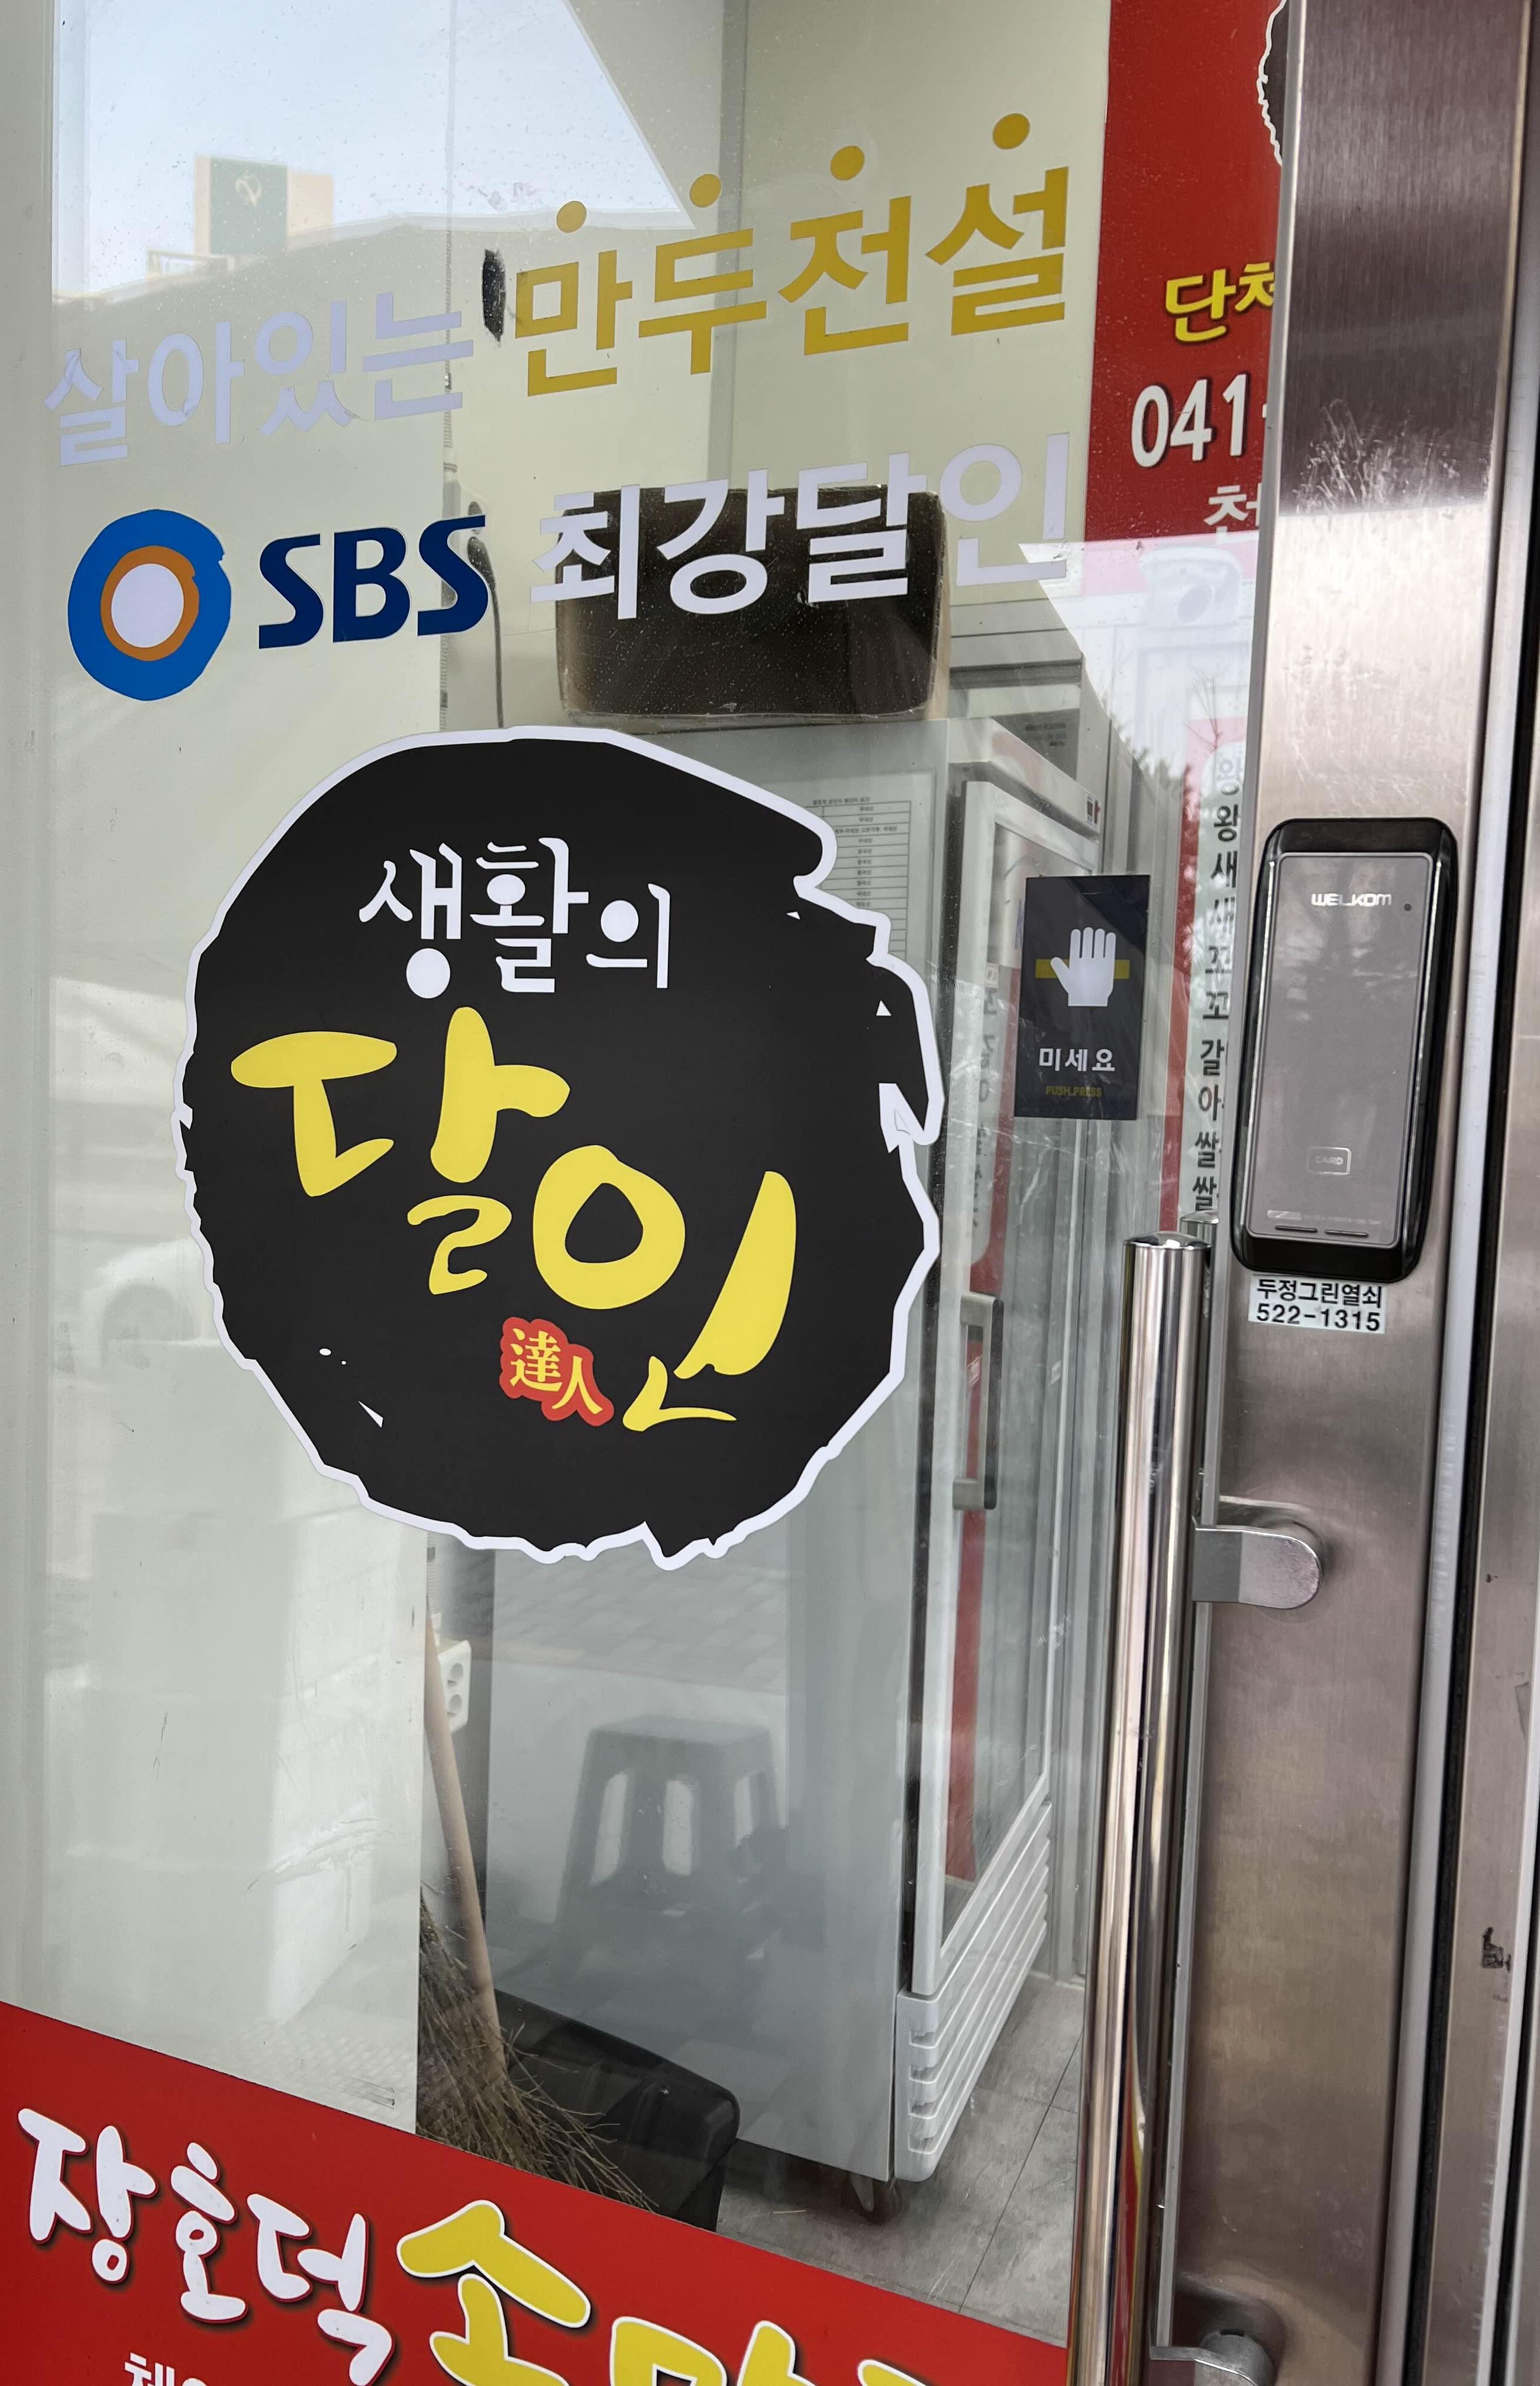 SBS최강달인 생활이 달인 살아있는 만두전설 문구